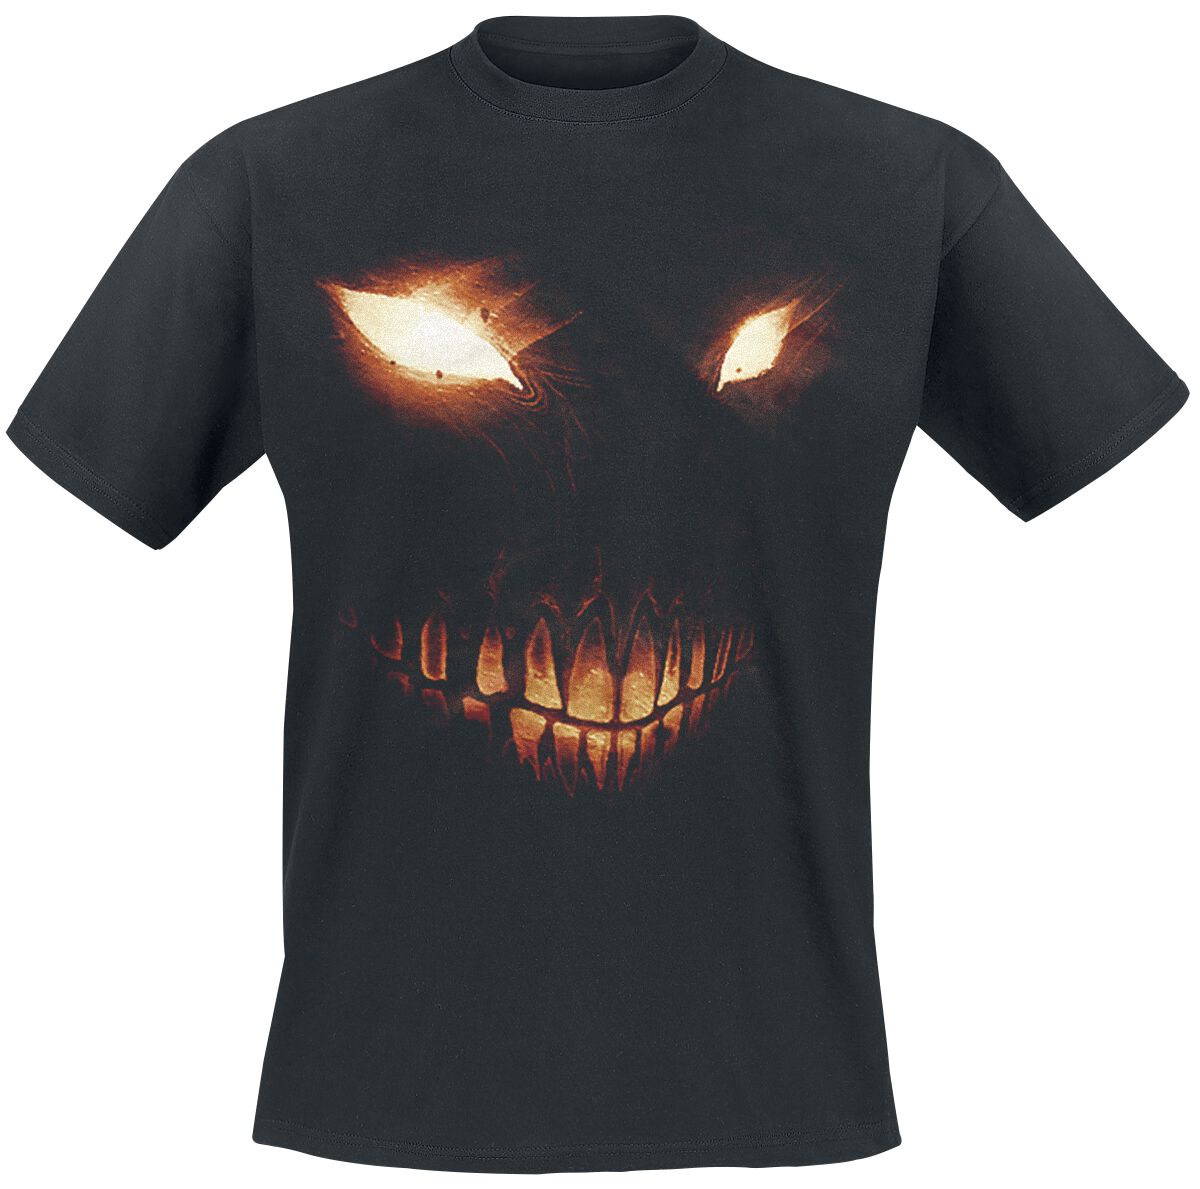 Disturbed T-Shirt - Bright Eyes - L bis 5XL - für Männer - Größe 5XL - schwarz  - Lizenziertes Merchandise!